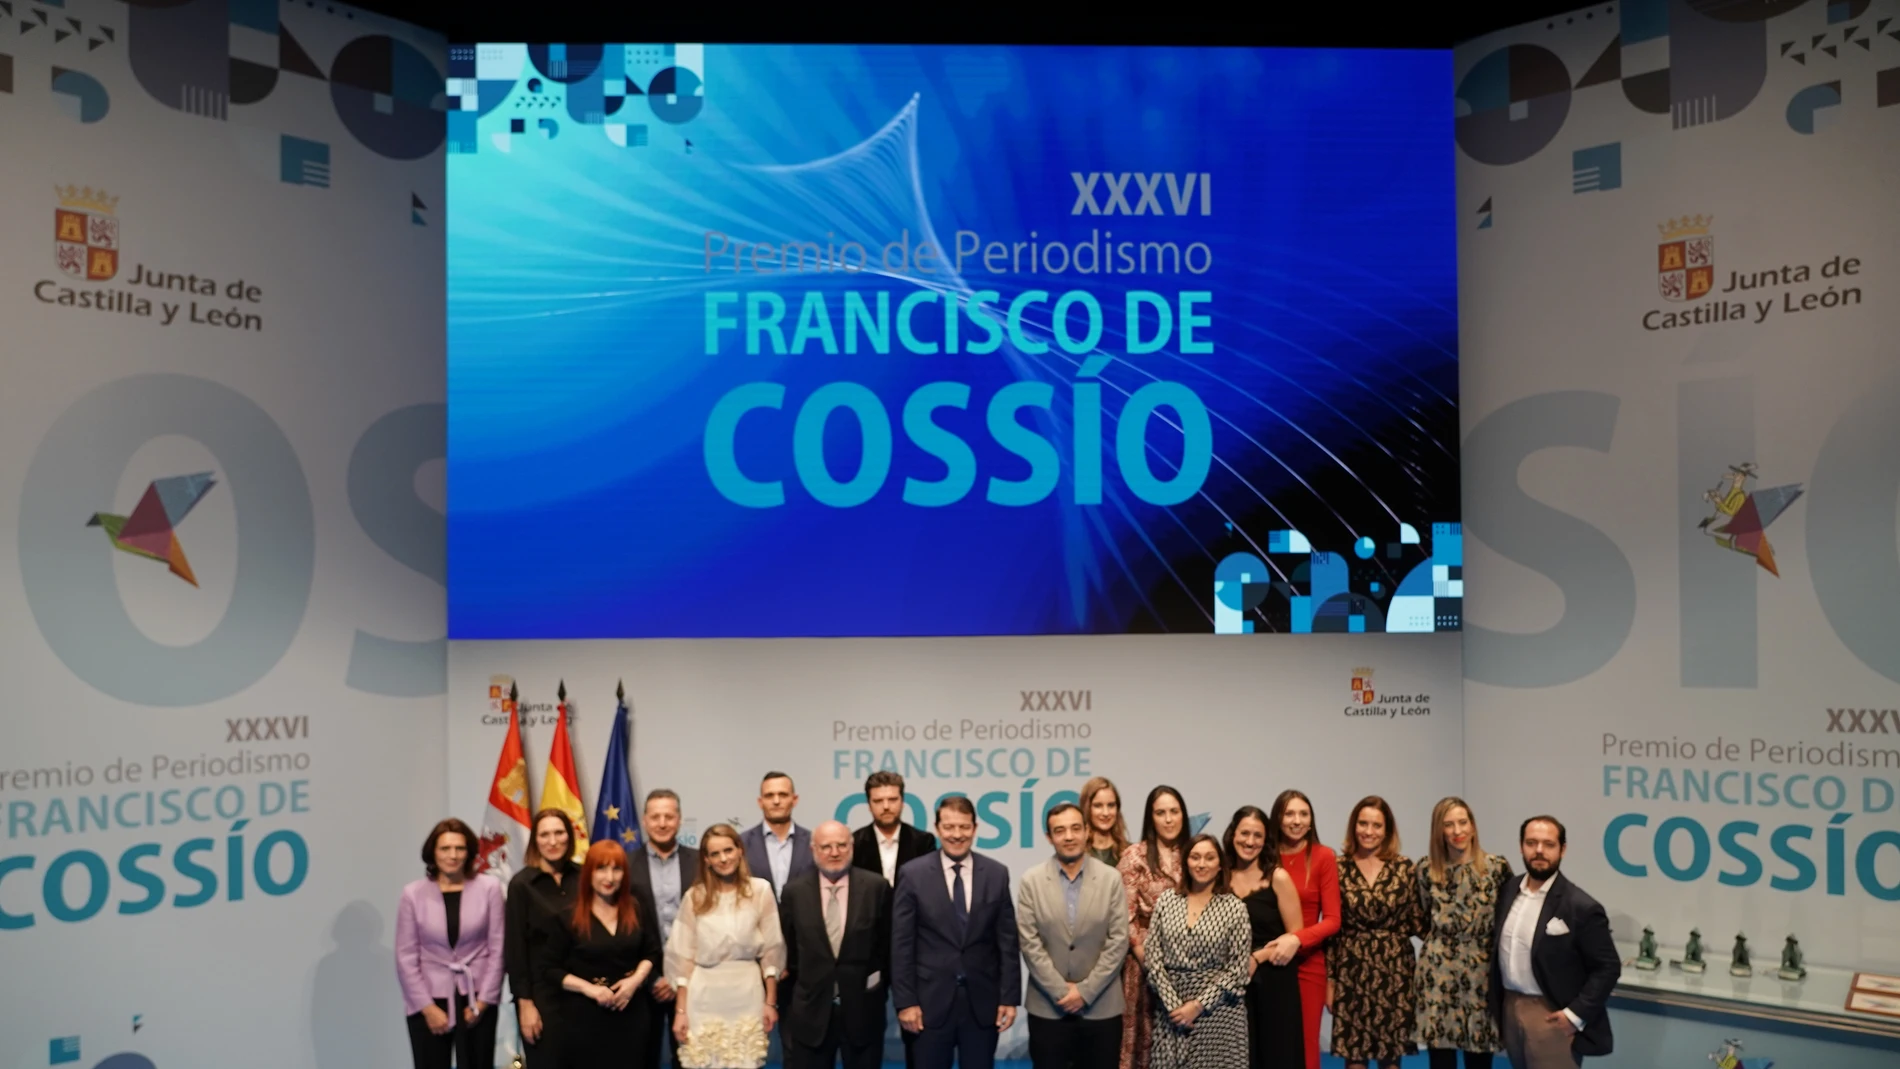 XXXVI Premios de Periodismo Francisco de Cossío